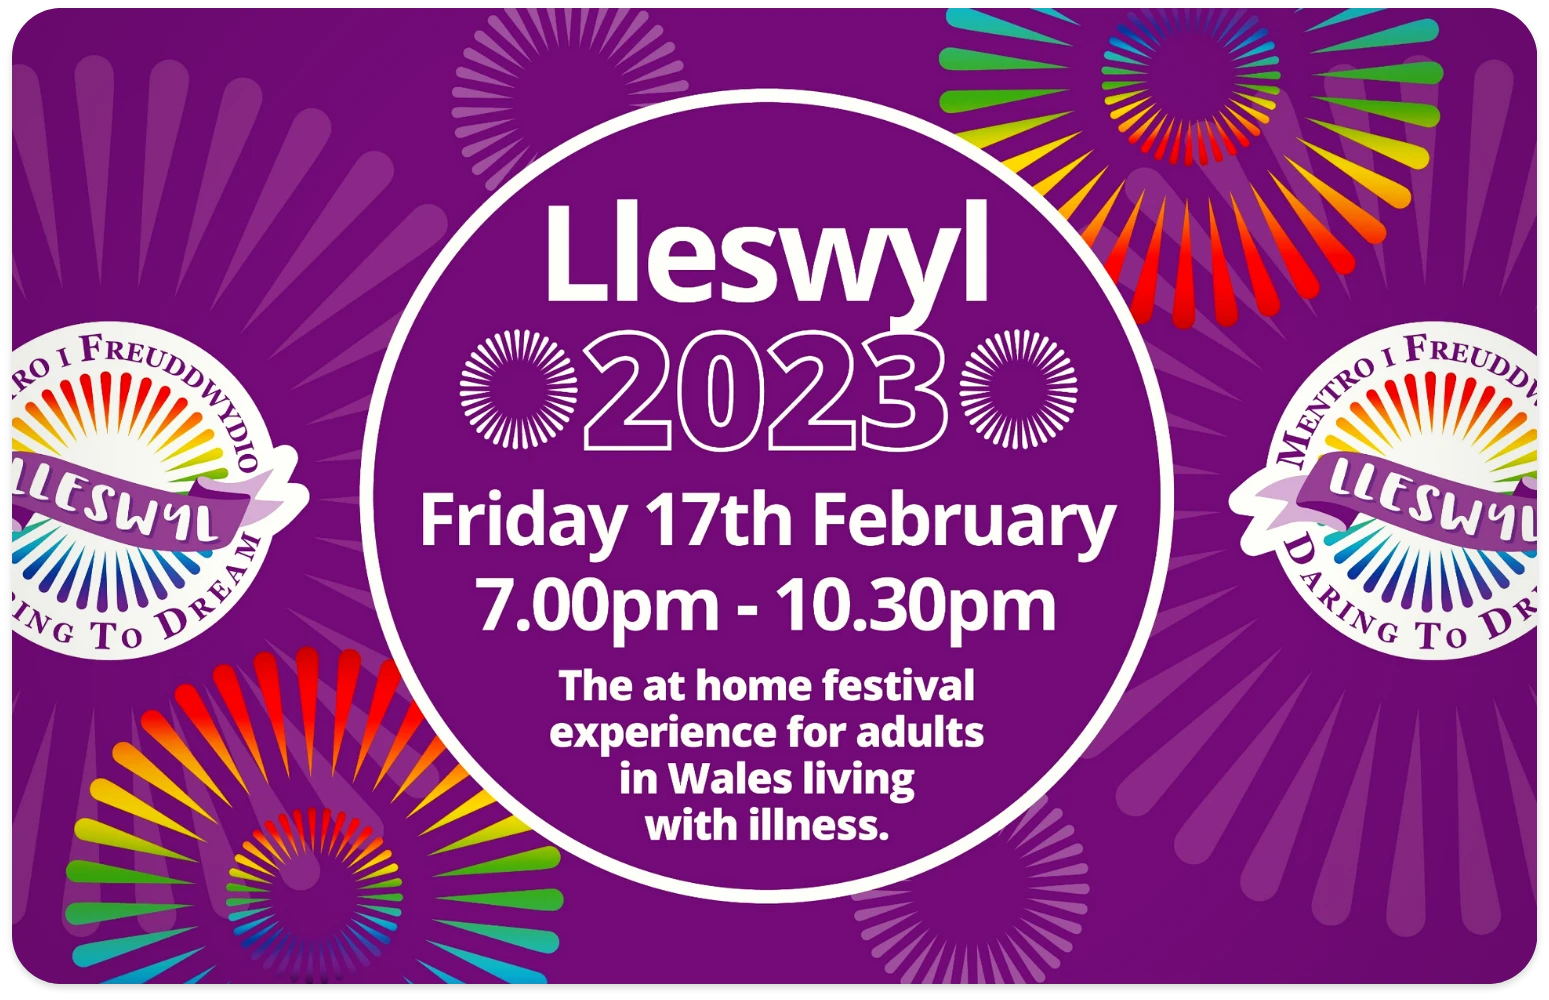 Llesywl Festival 2023